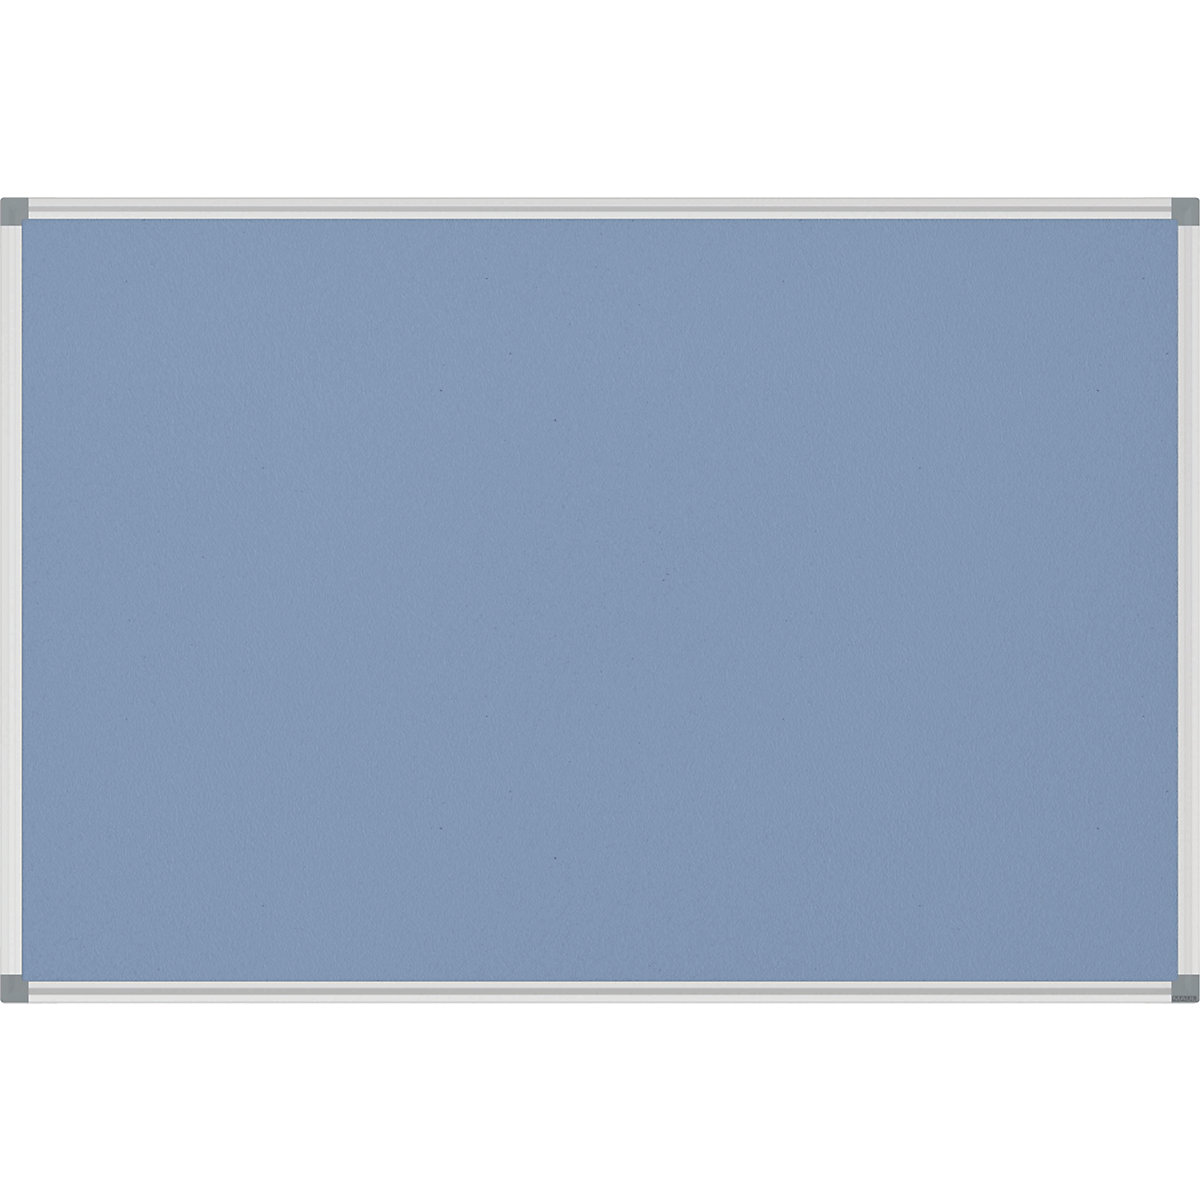 Tableau à épingler STANDARD – MAUL, habillage feutre, bleu clair, l x h 900 x 600 mm-2